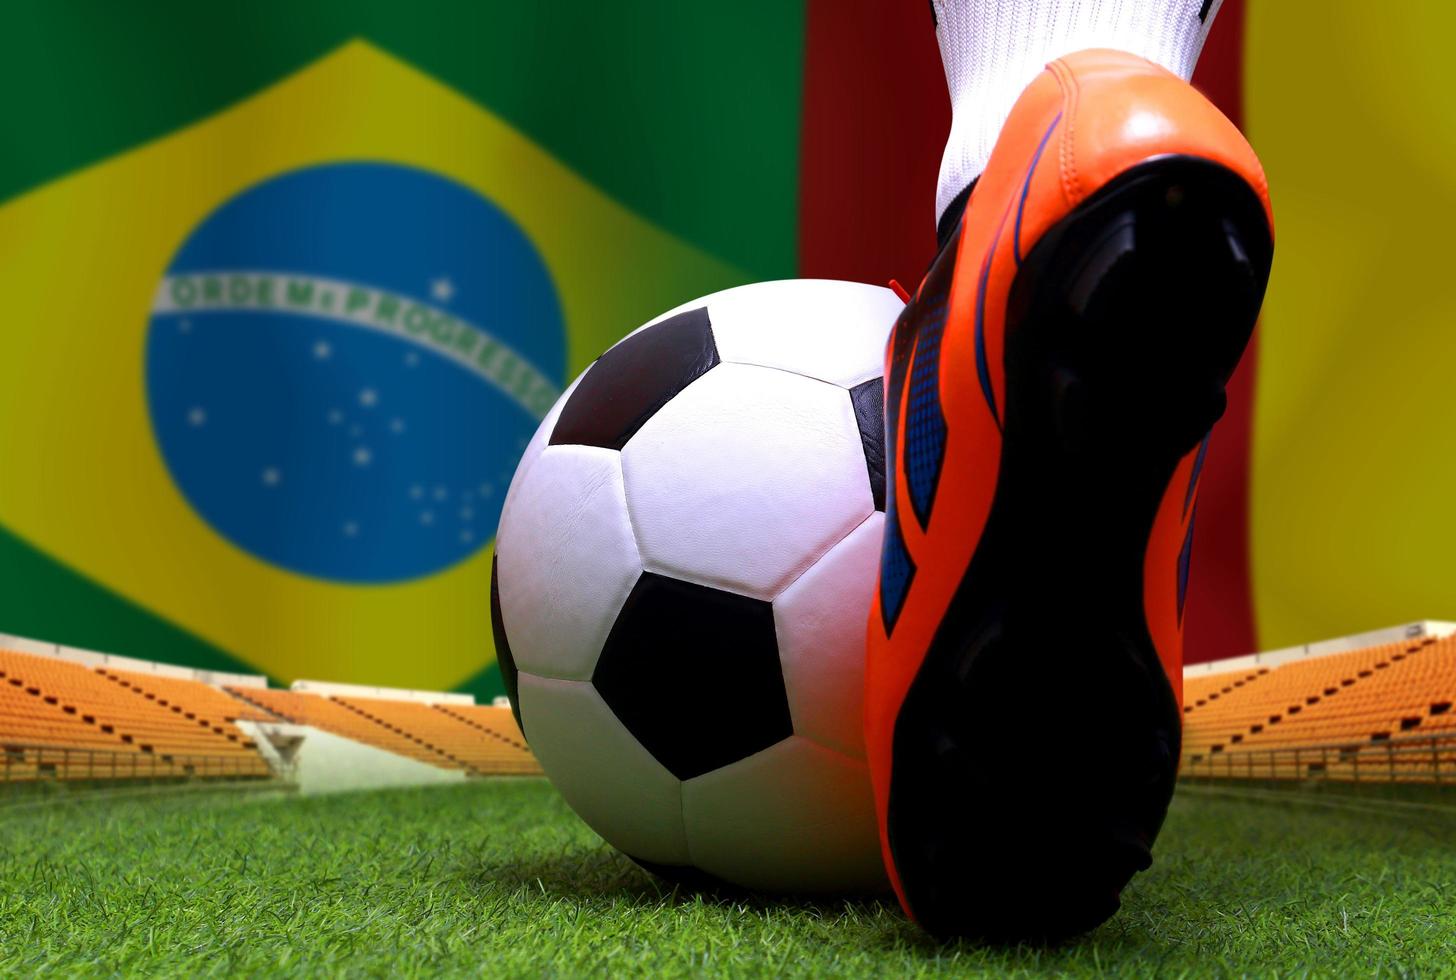 calcio tazza concorrenza fra il nazionale brasile e nazionale camerun. foto